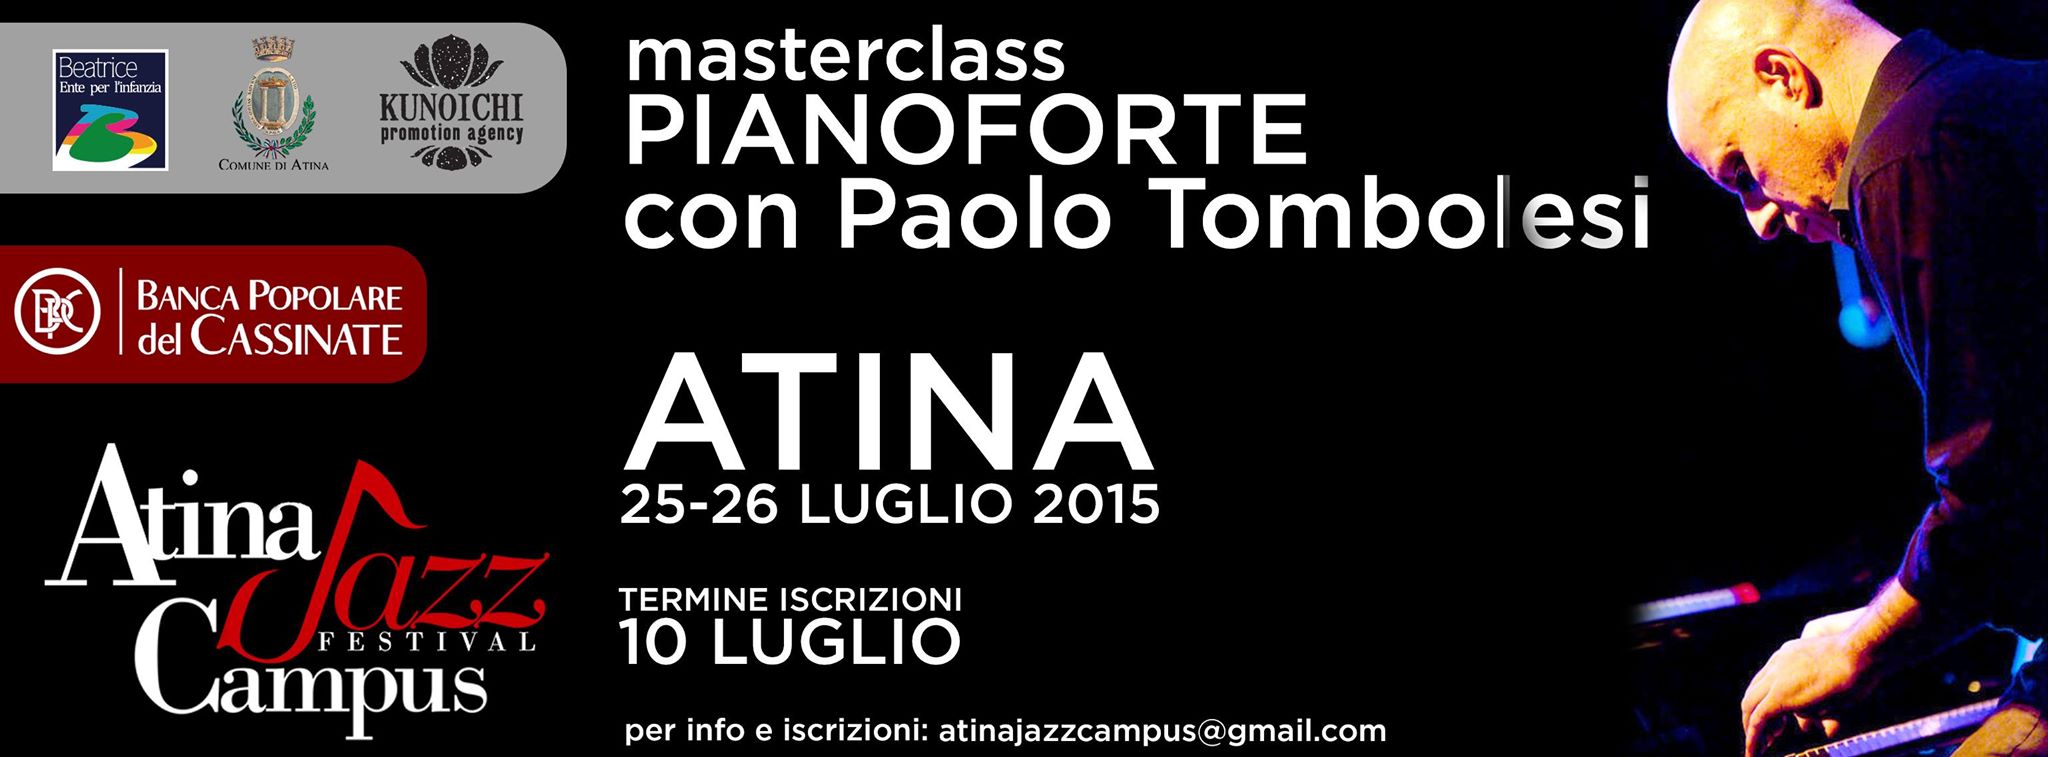 Atina Jazz - 24 e 25 luglio - Master class di pianoforte con Paolo Tombolesi